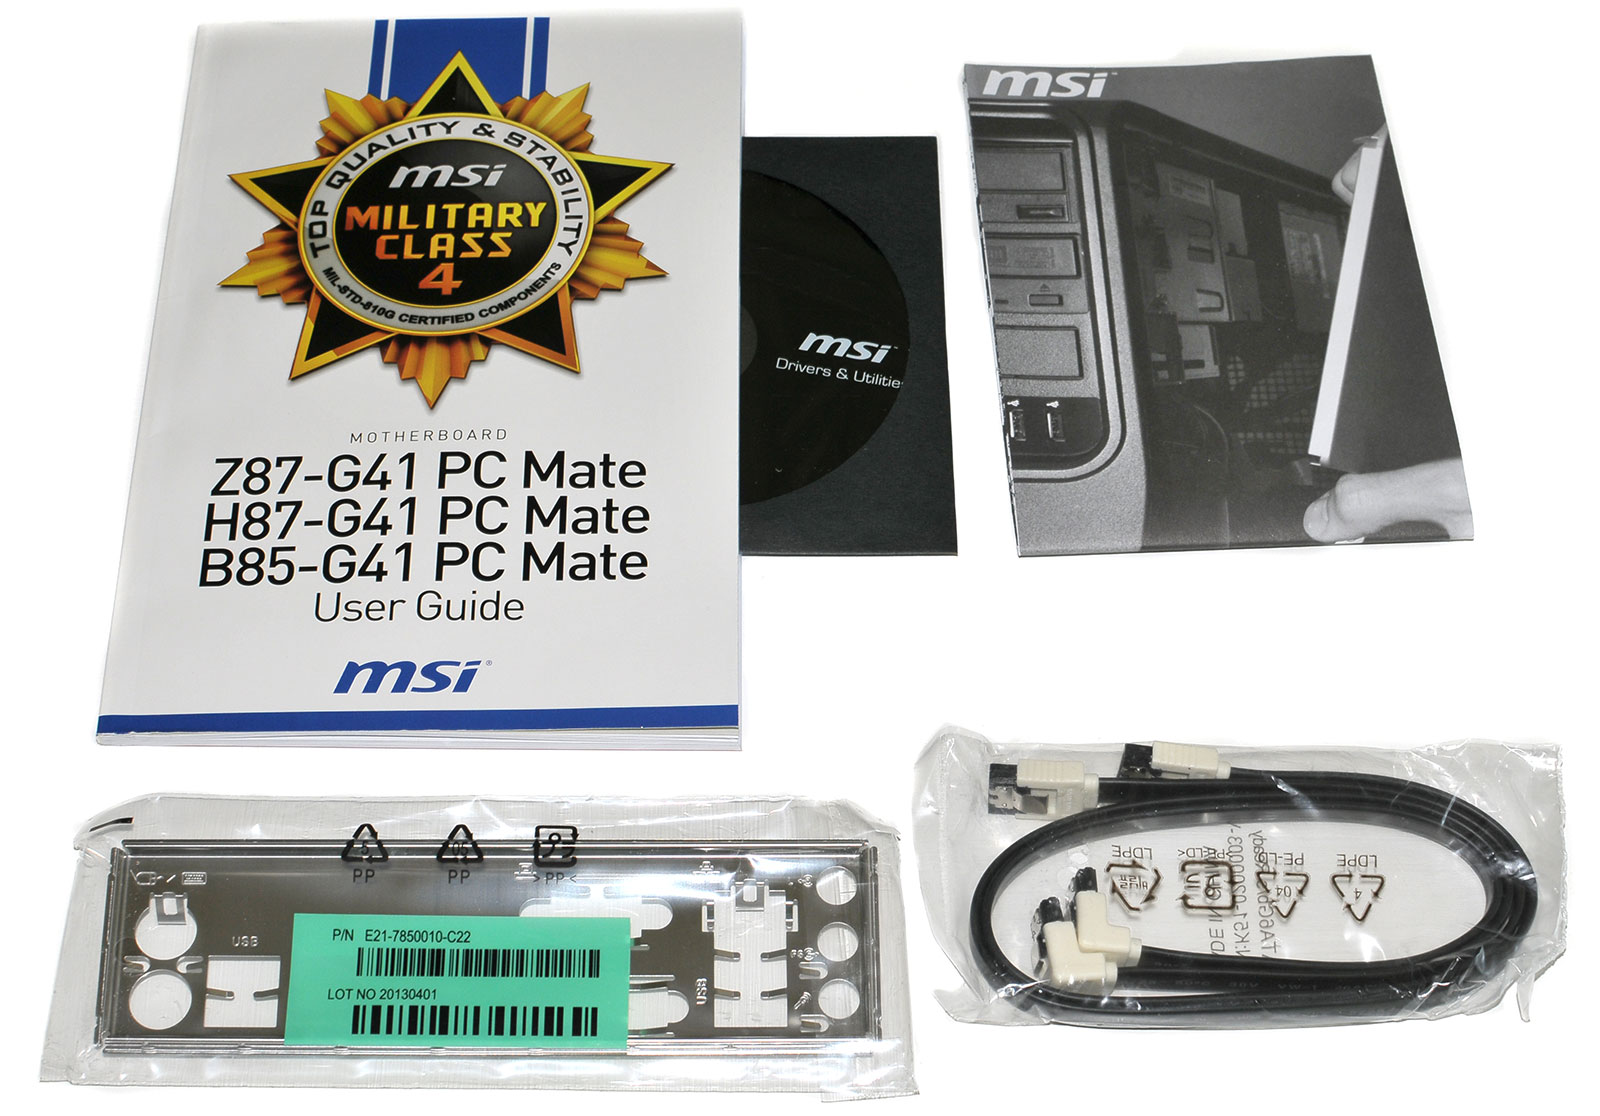 heel Expliciet vroegrijp MSI Z87-G41 PC Mate en test - 6 cartes mères Z87 d'entrée de gamme Asrock,  Asus, Gigabyte et MSI comparées - HardWare.fr